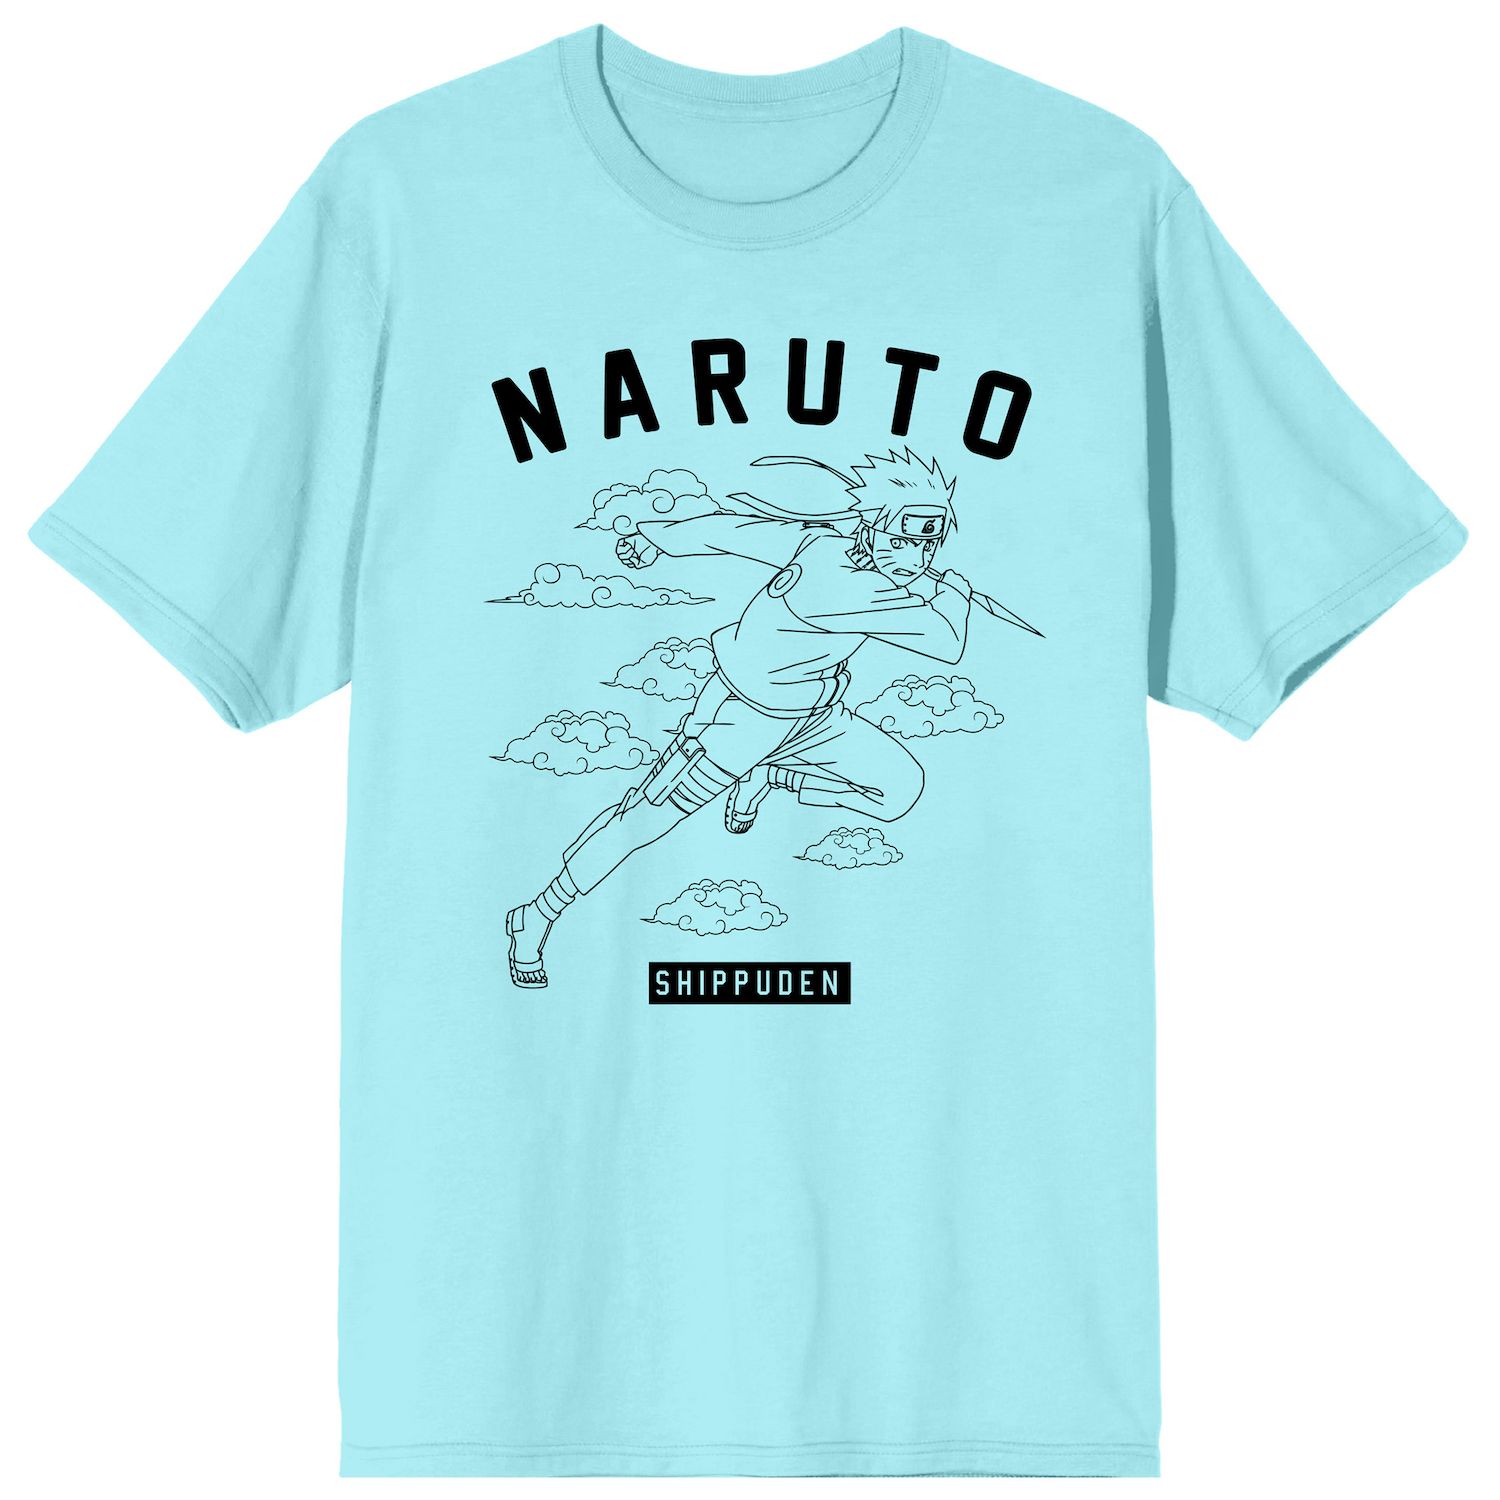 Naruto Classic Naruto Uzumaki & Kanji Men's White Long Sleeve Shirt-3XL